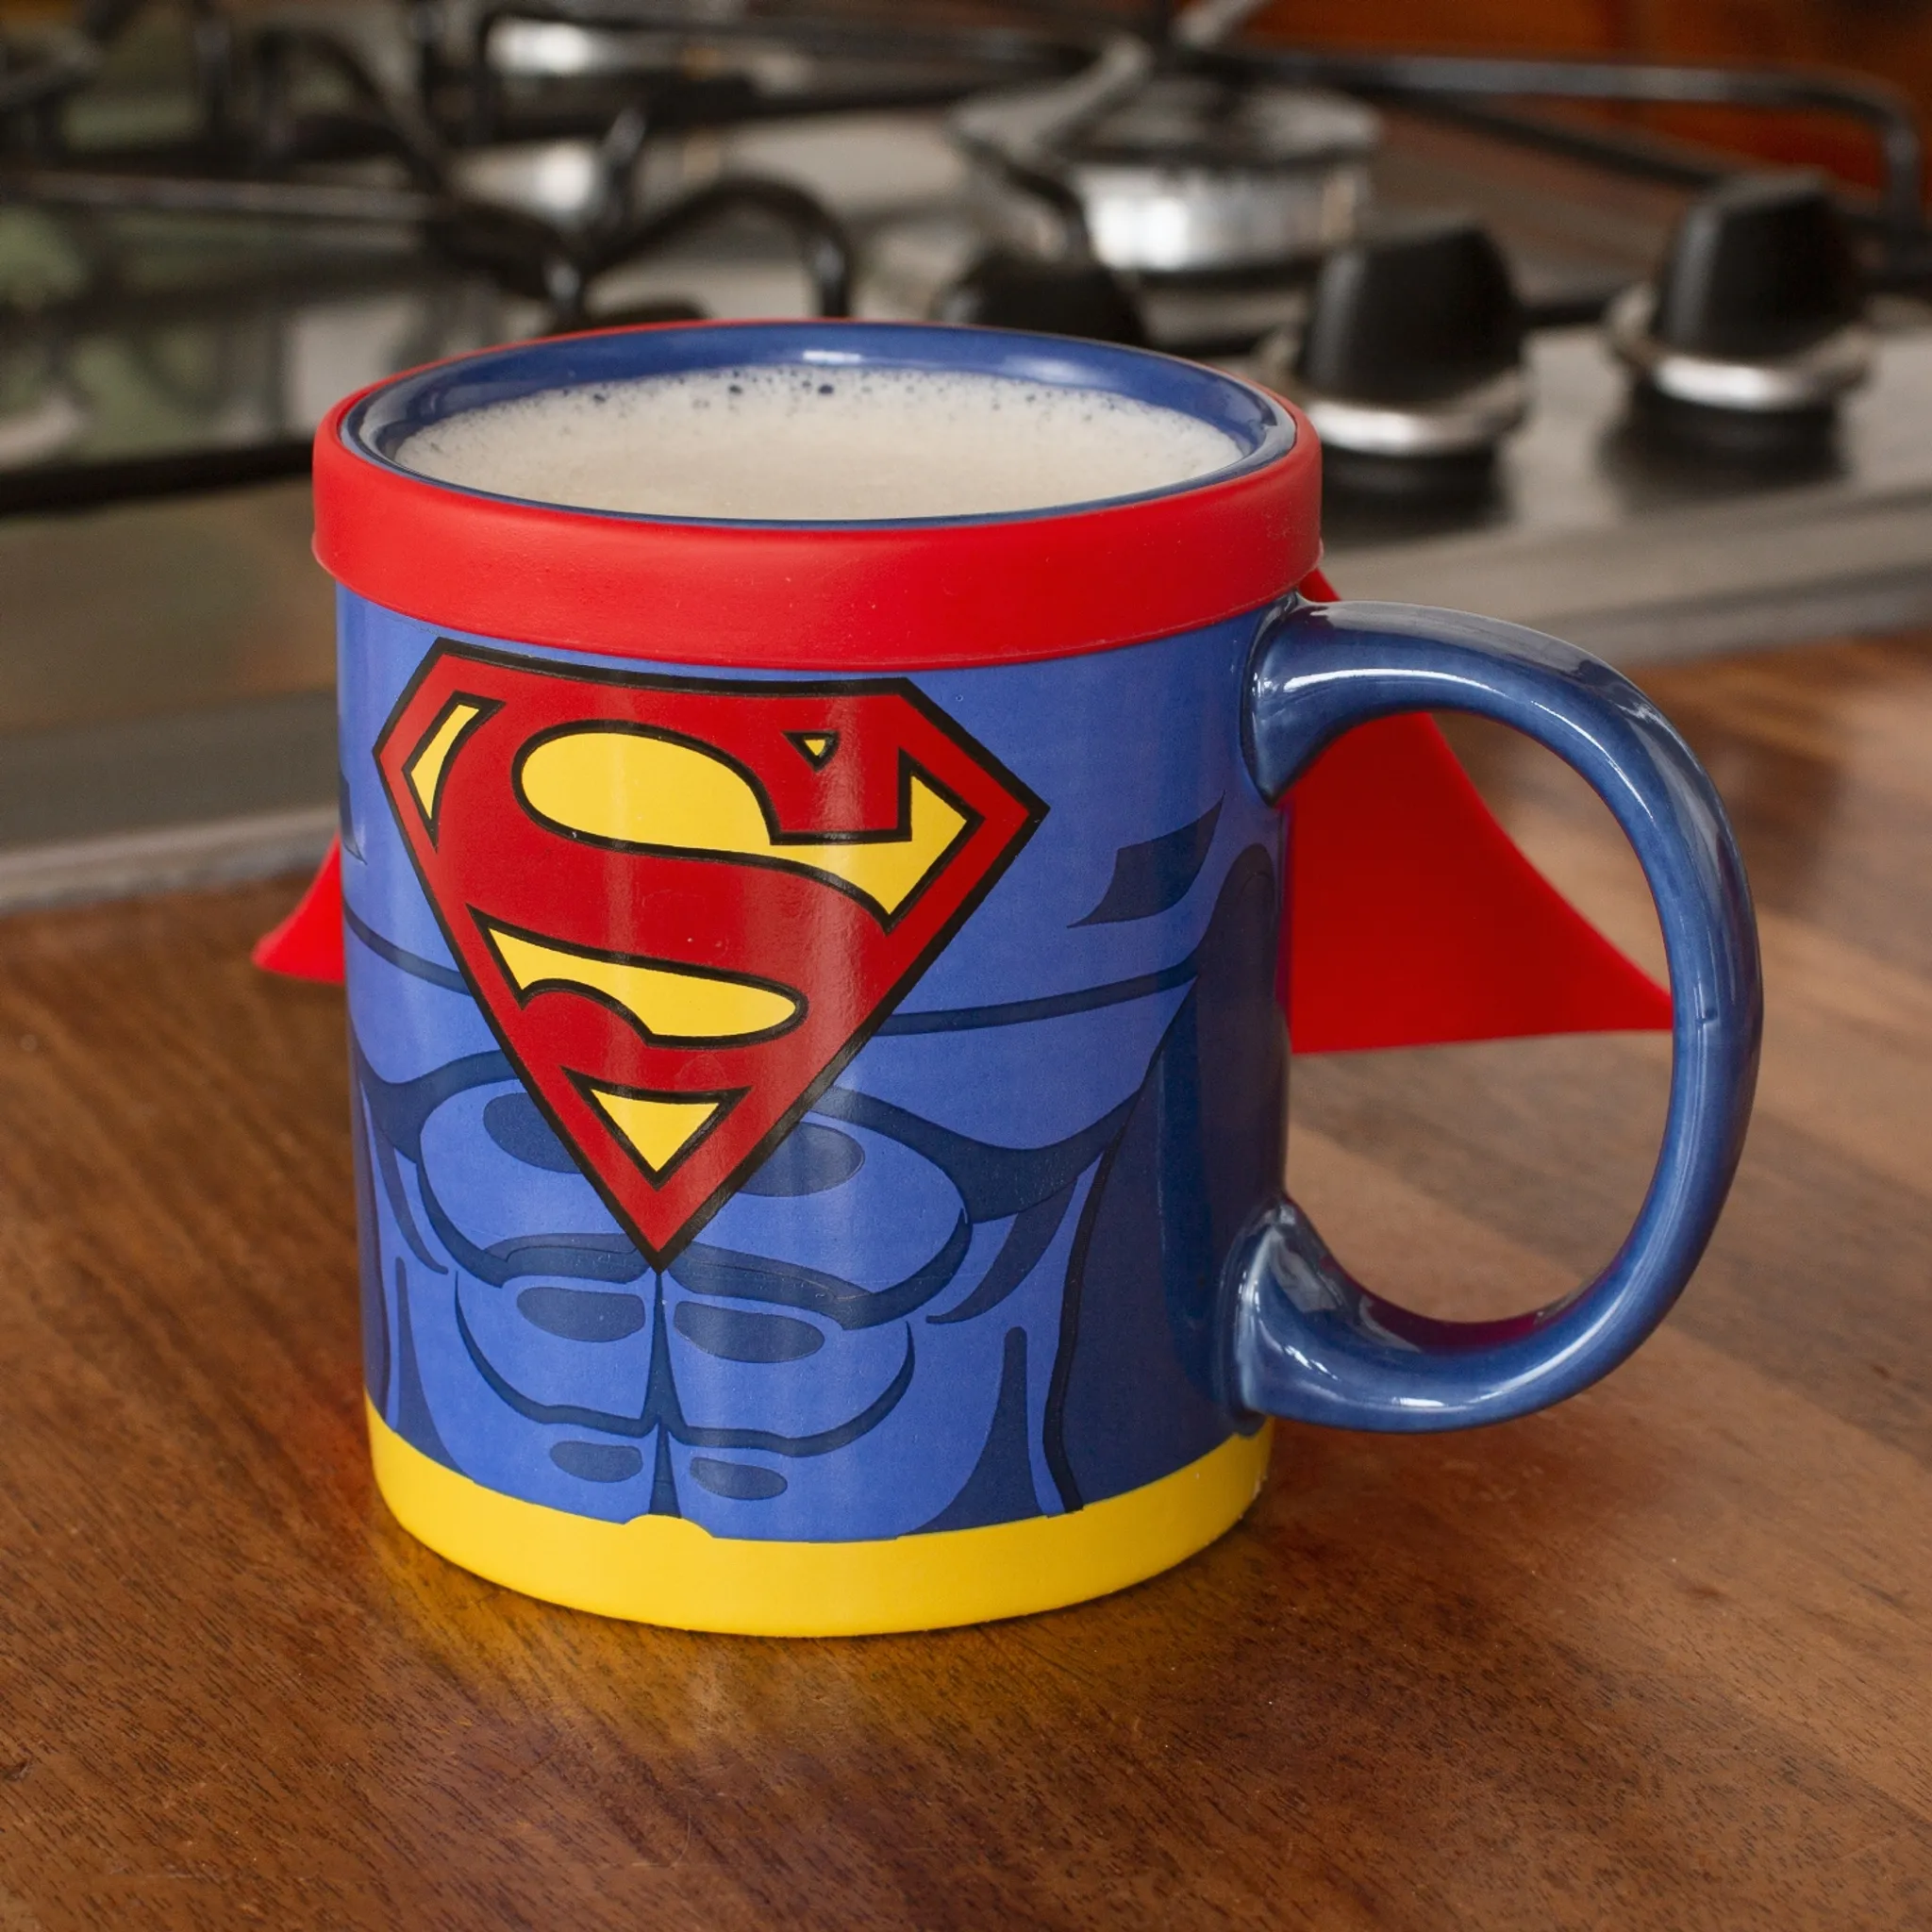 kaufland.de | Thumbs Up Superman Mug With Cape